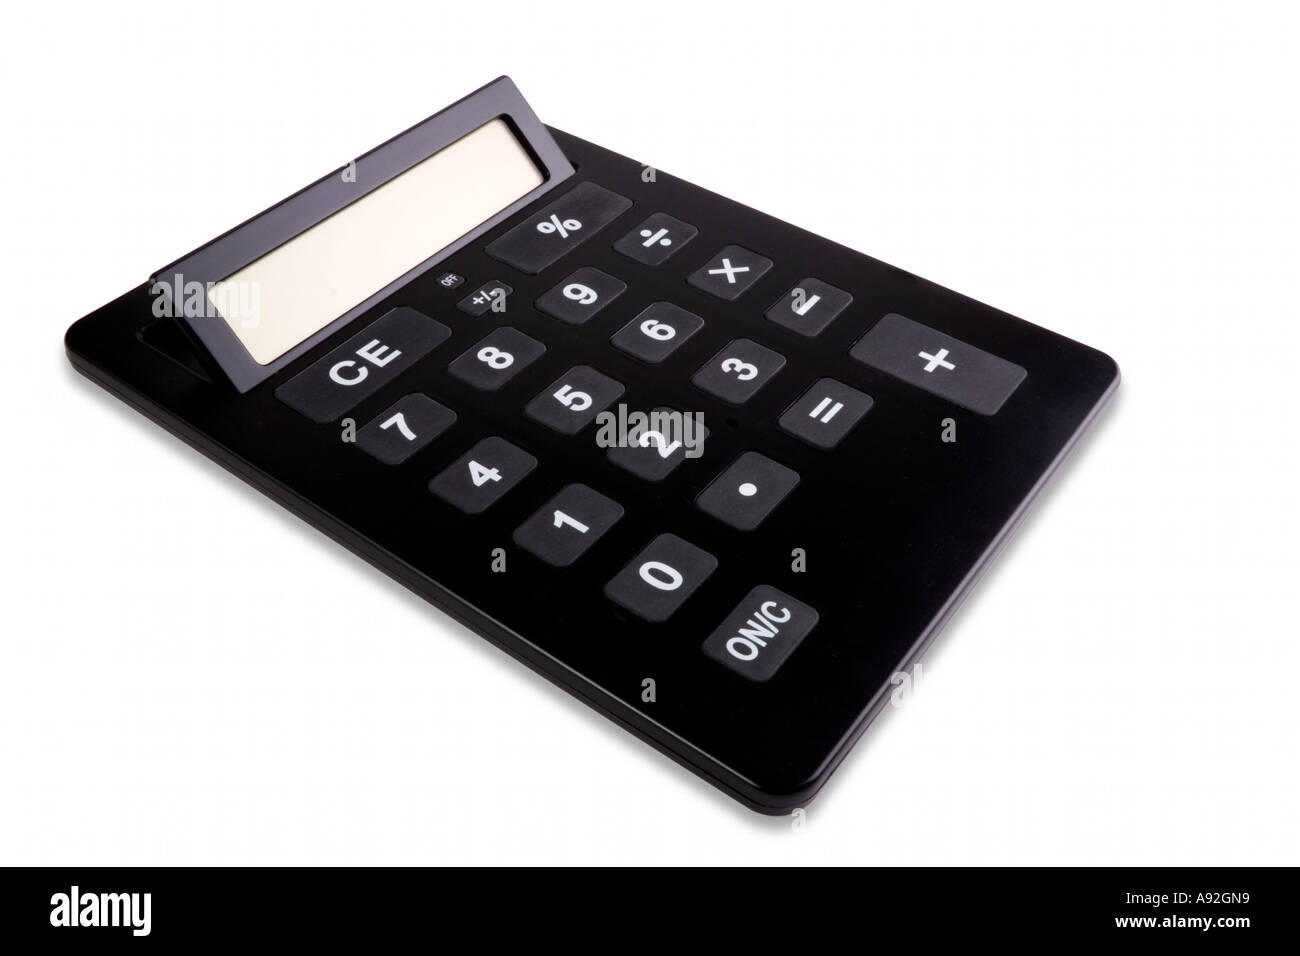 Desk calculator Stock Photo